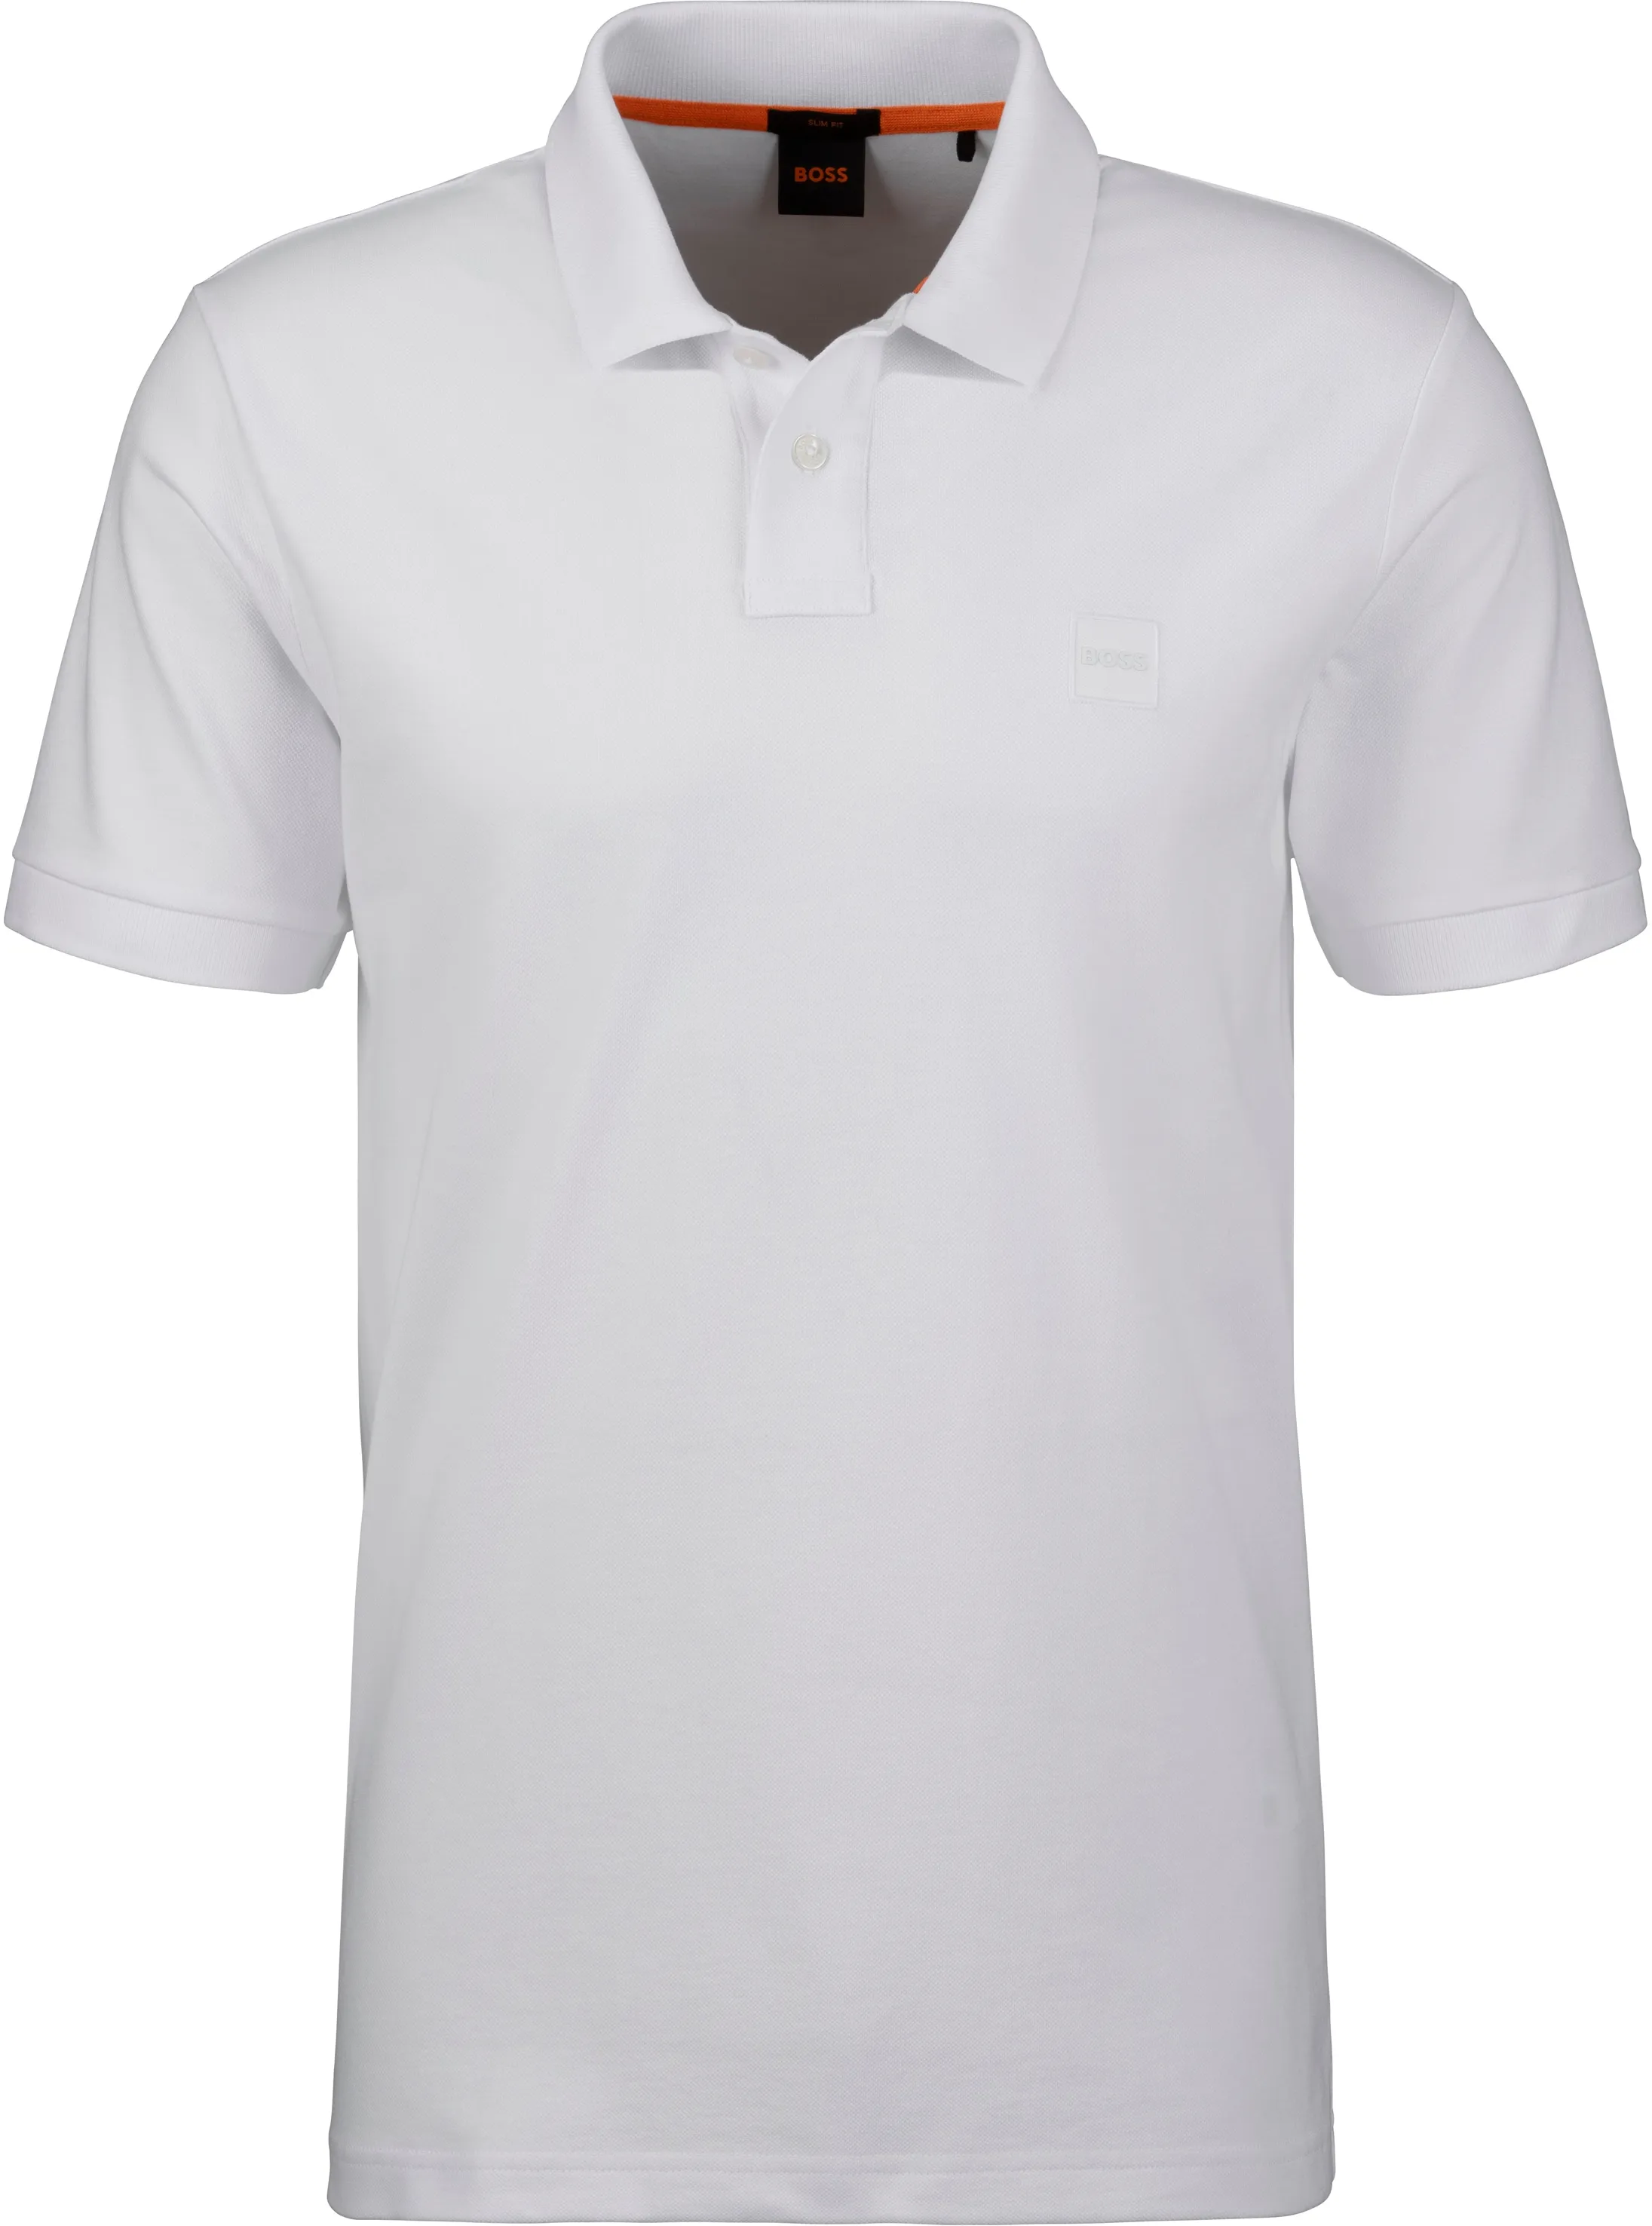 Poloshirt BOSS ORANGE "Passenger" Gr. XXL, weiß (100_white) Herren Shirts Kurzarm mit Polokragen